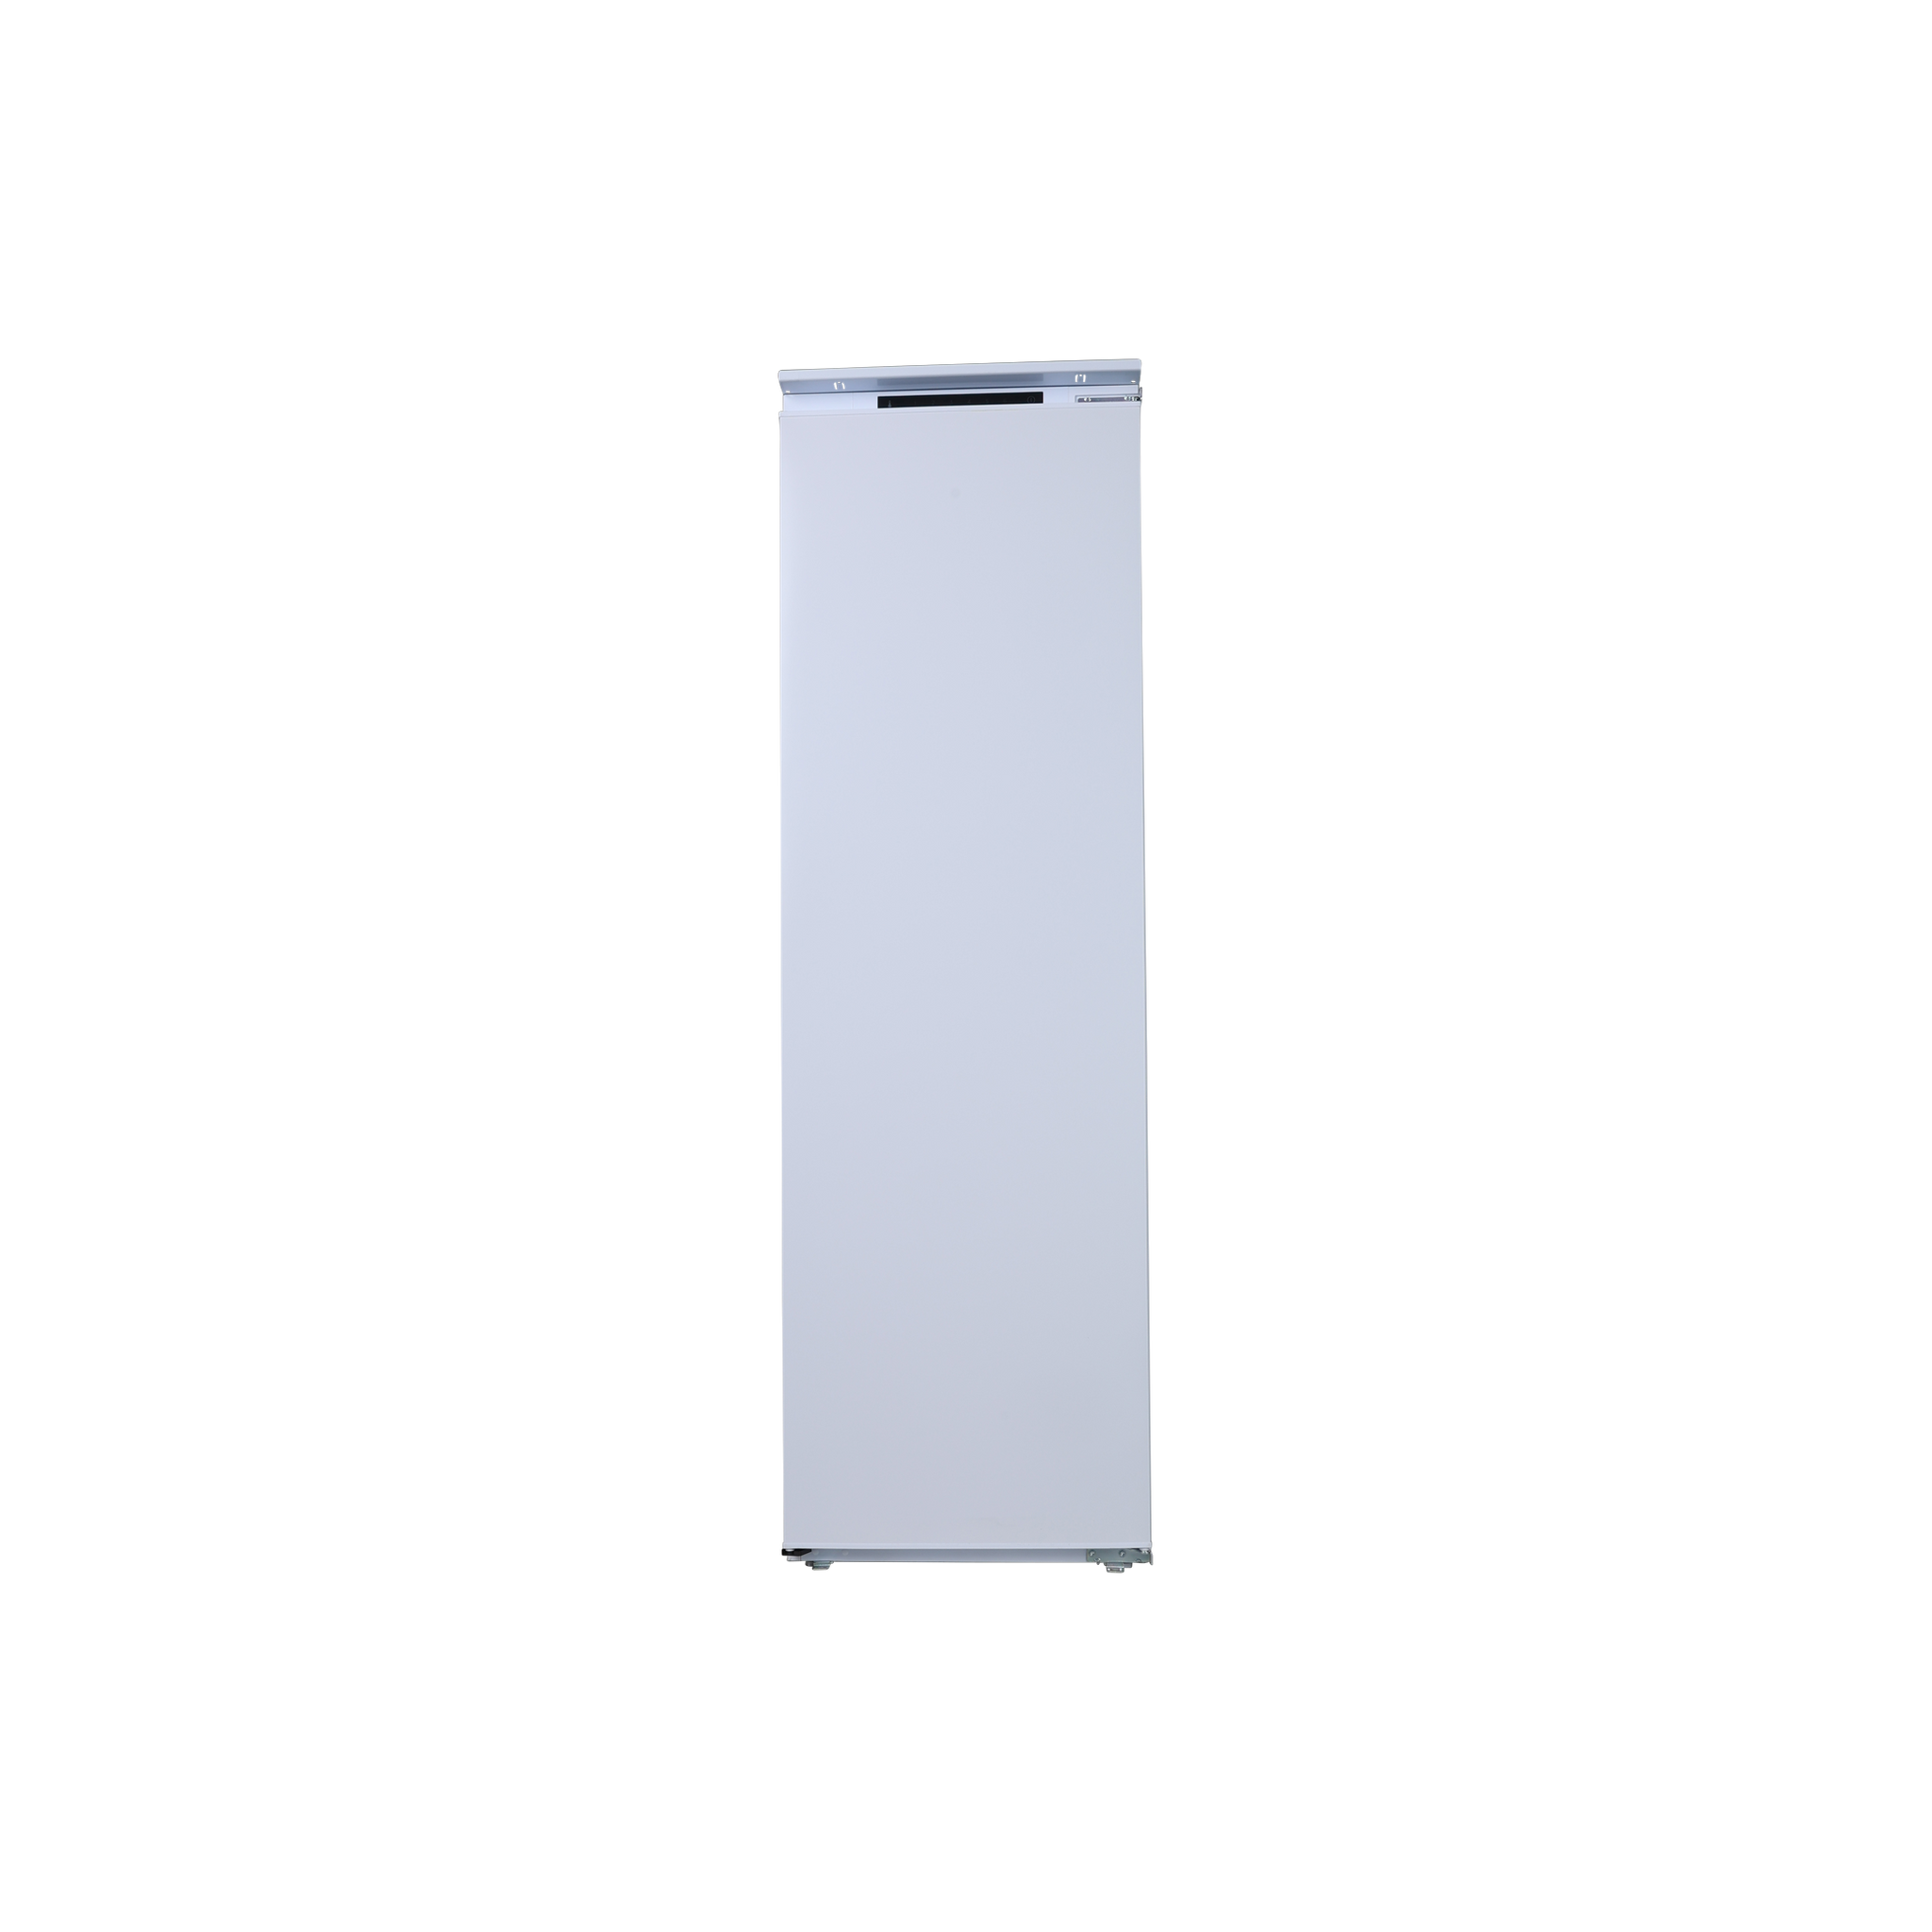 Réfrigérateur 1 porte encastrable HAIER HLE172